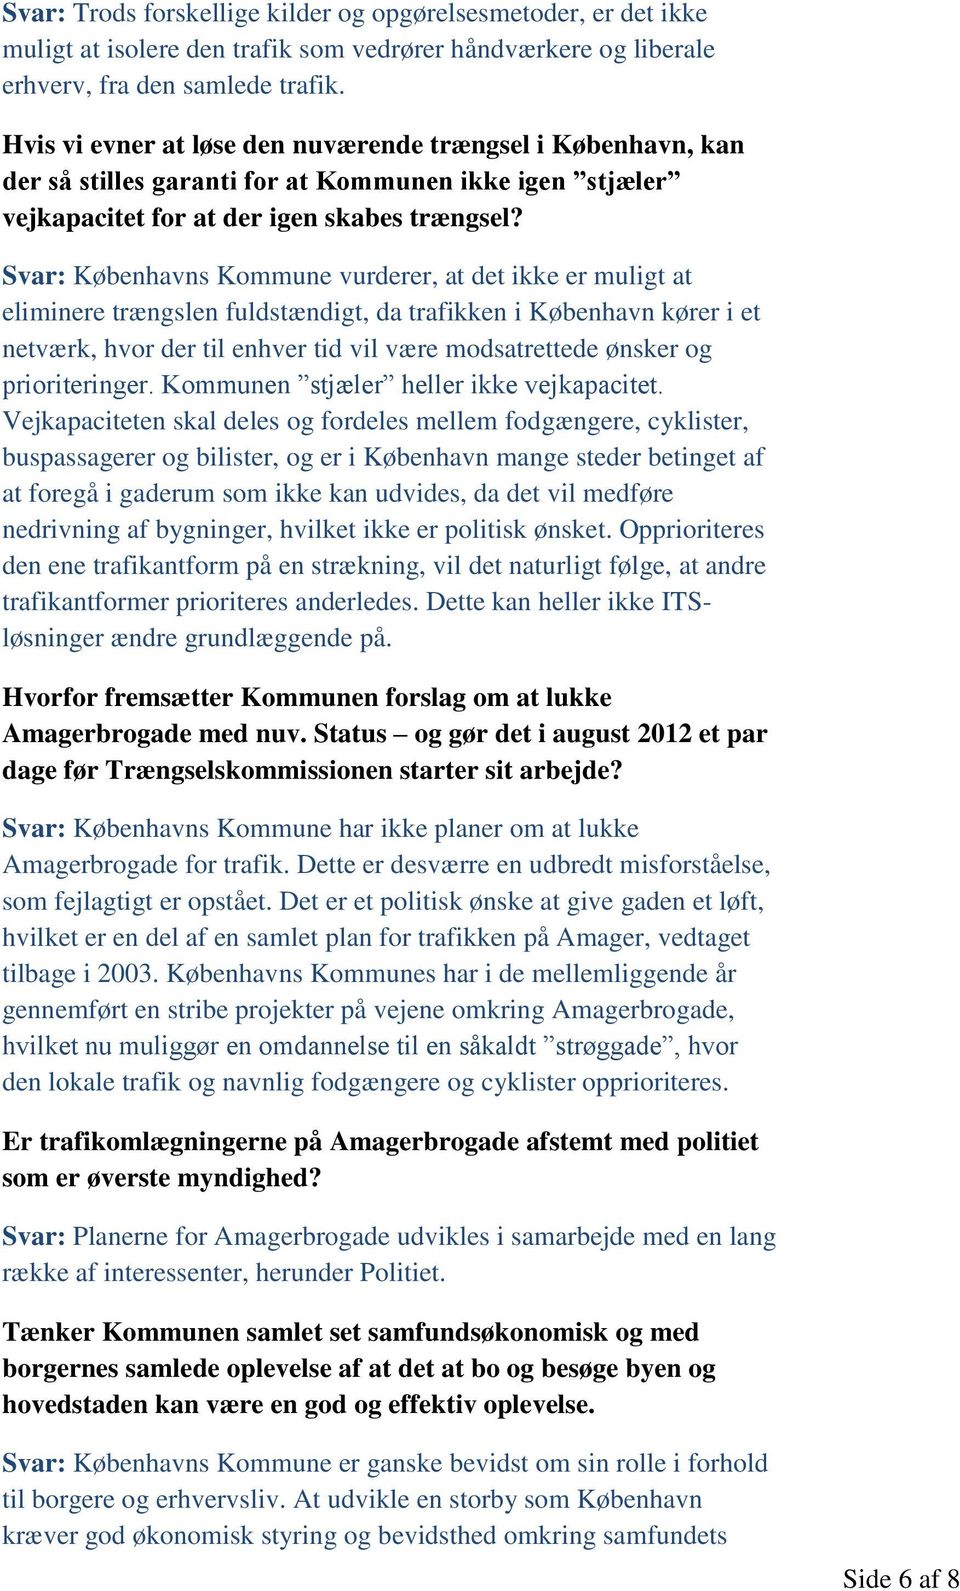 Svar: Københavns Kommune vurderer, at det ikke er muligt at eliminere trængslen fuldstændigt, da trafikken i København kører i et netværk, hvor der til enhver tid vil være modsatrettede ønsker og